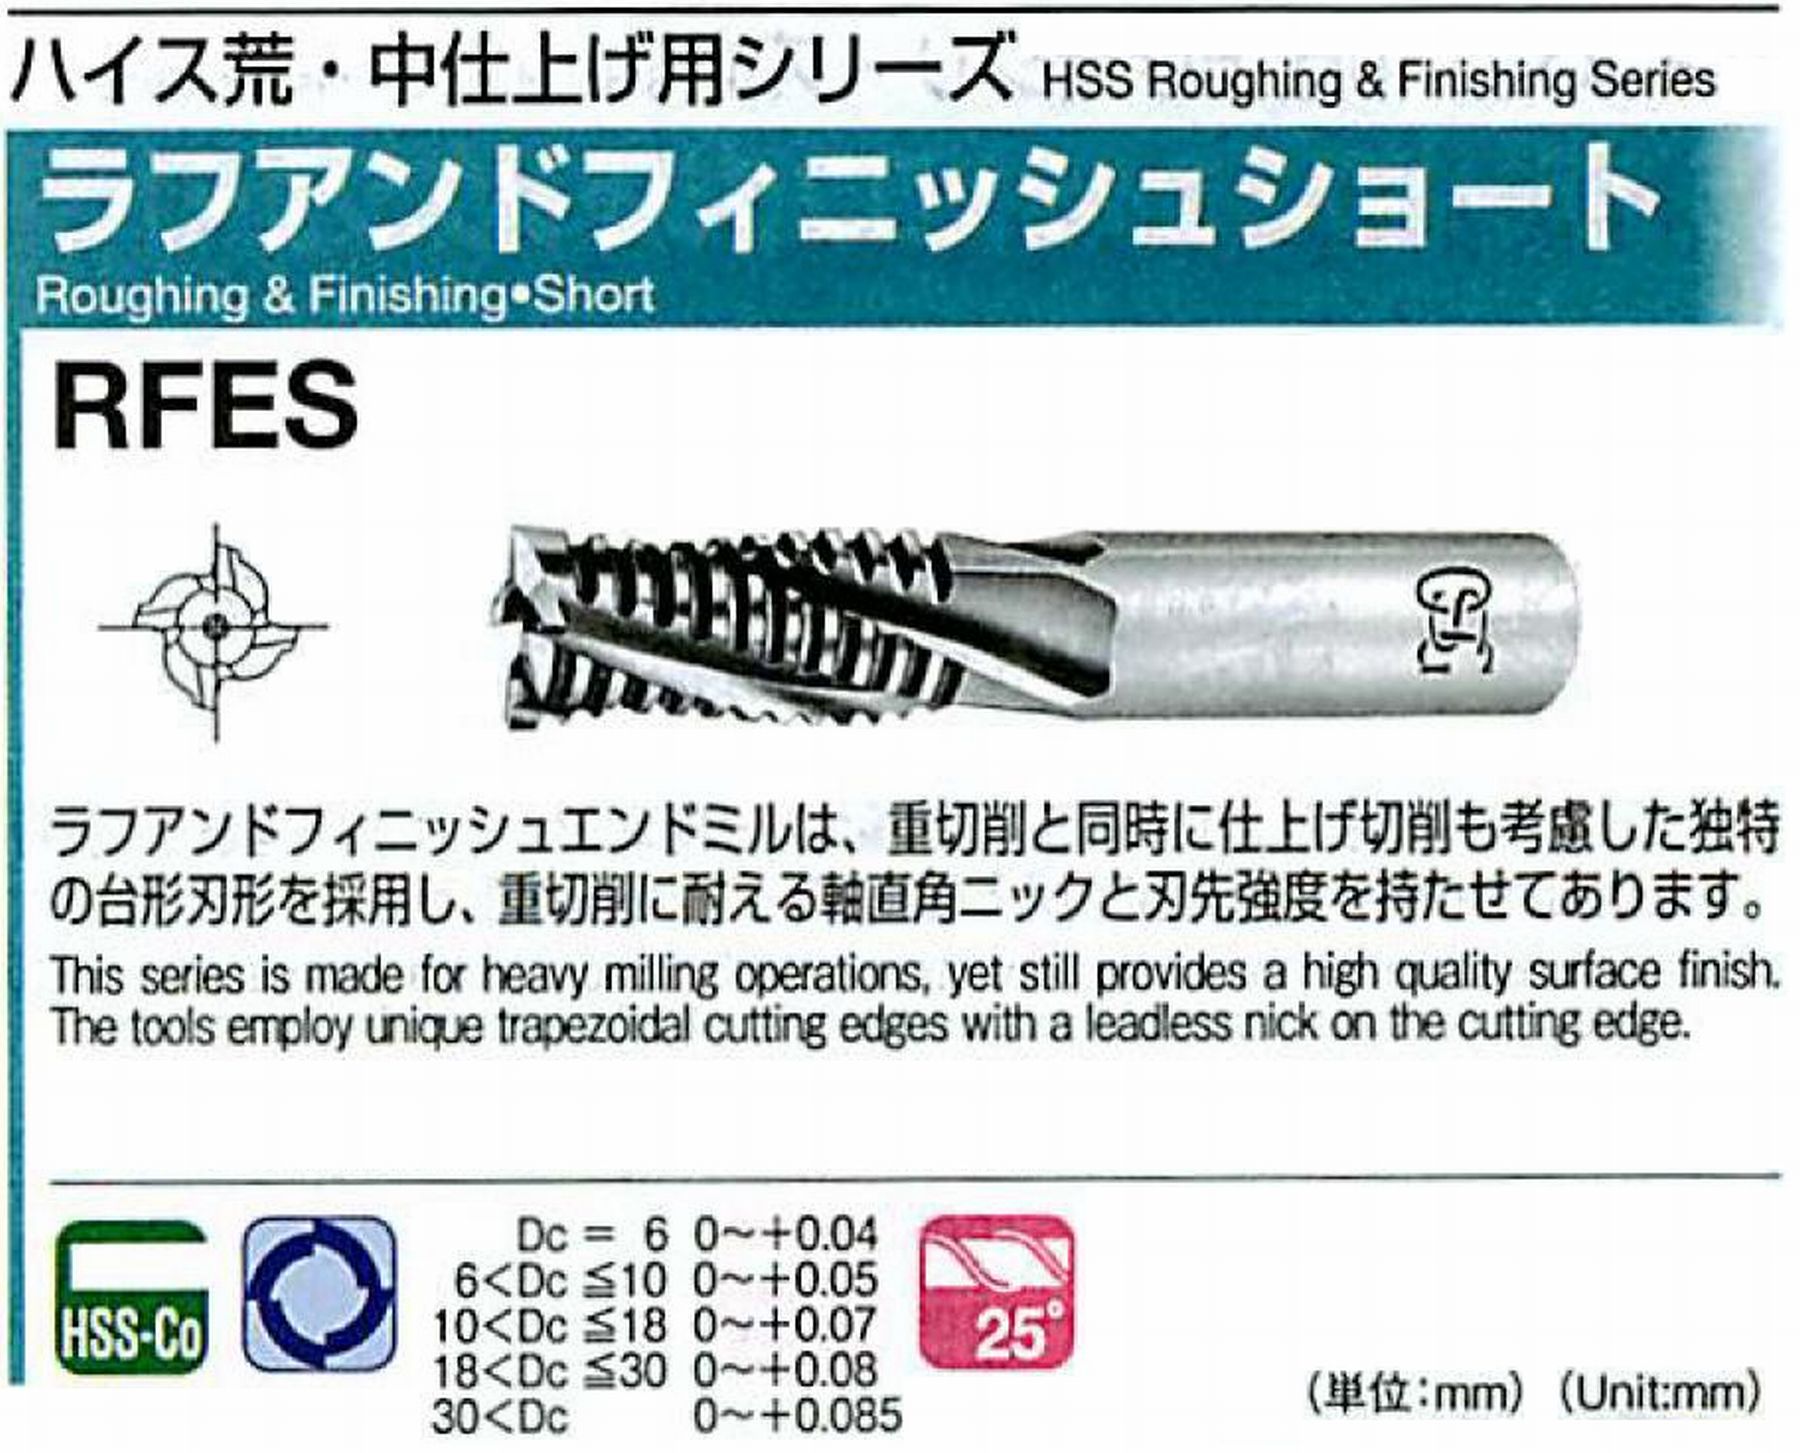 オーエスジー/OSG ラフアンドフィニッシュ ショート RFES 外径10 全長70 刃長25 シャンク径10mm 刃数4